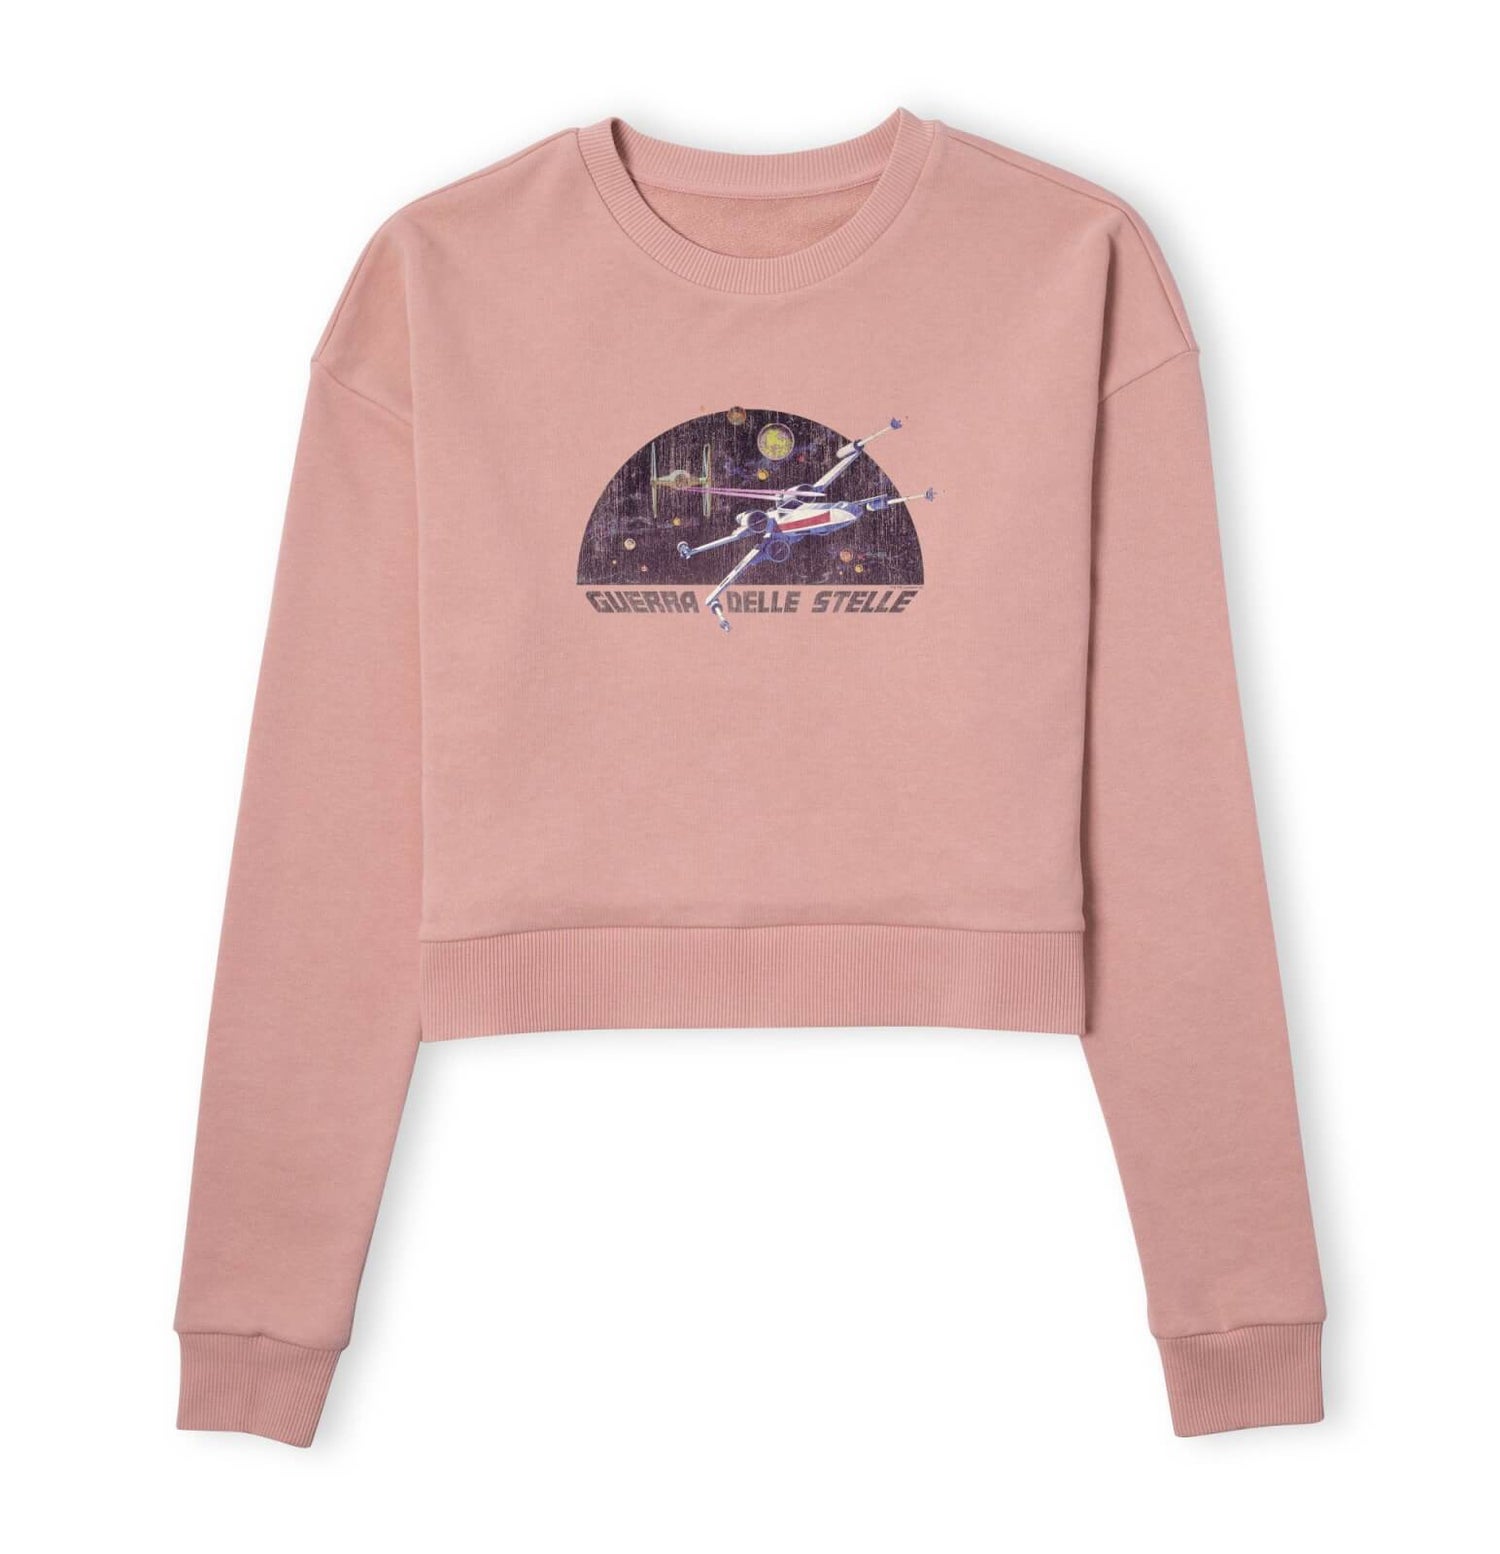 Star Wars X-Wing Italian Women's Cropped Sweatshirt - Dusty Pink